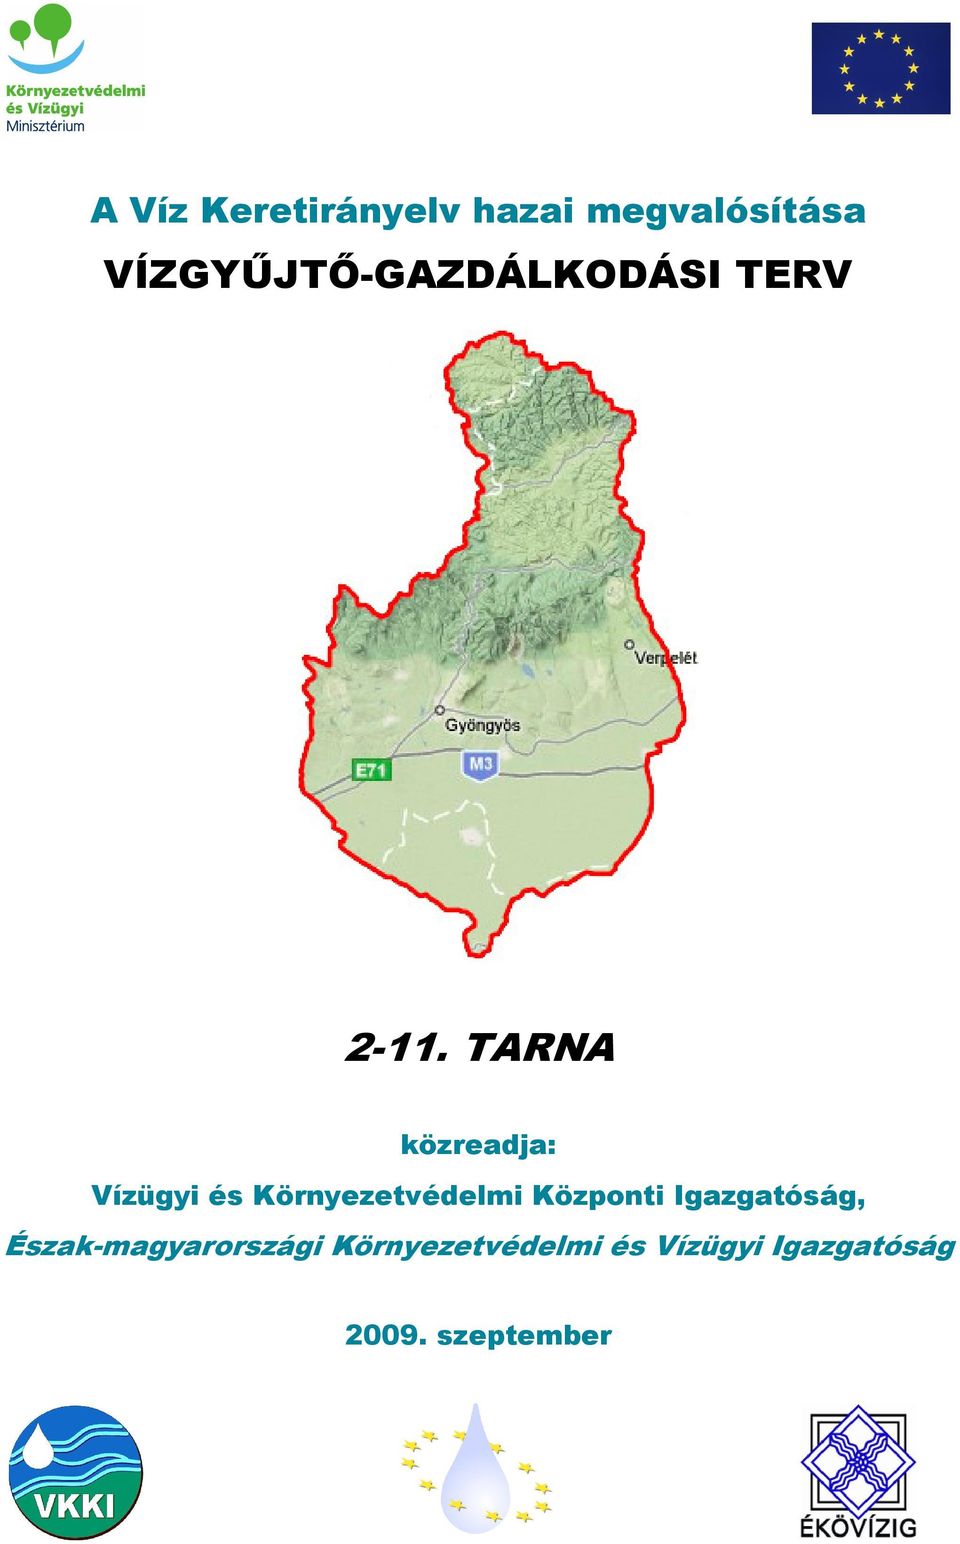 TARNA közreadja: Vízügyi és Környezetvédelmi Központi